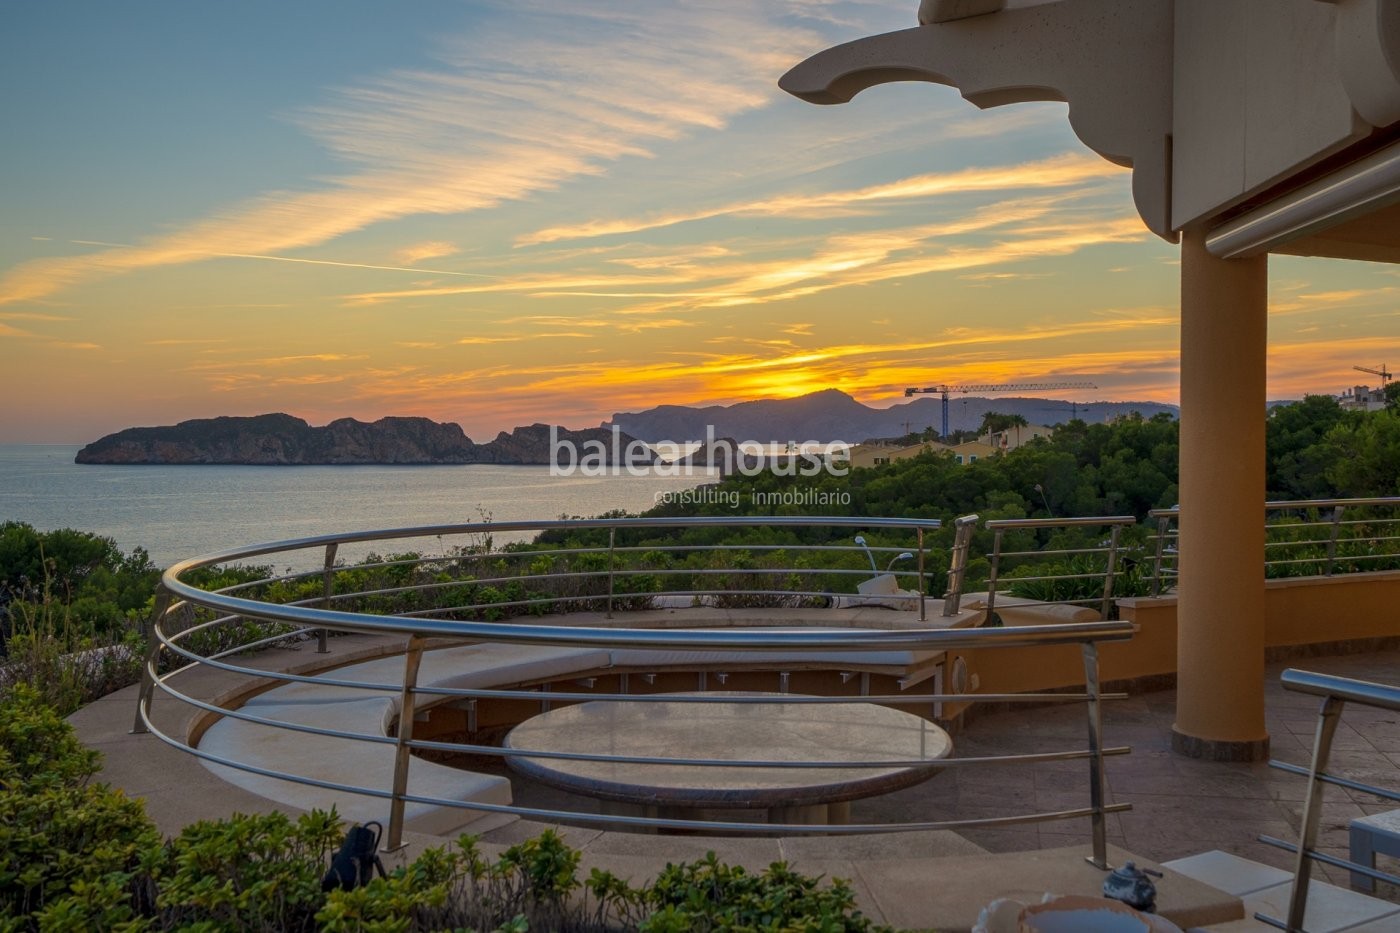 Vistas de increíble belleza al mar en Santa Ponsa desde este espectacular ático con piscina privada.